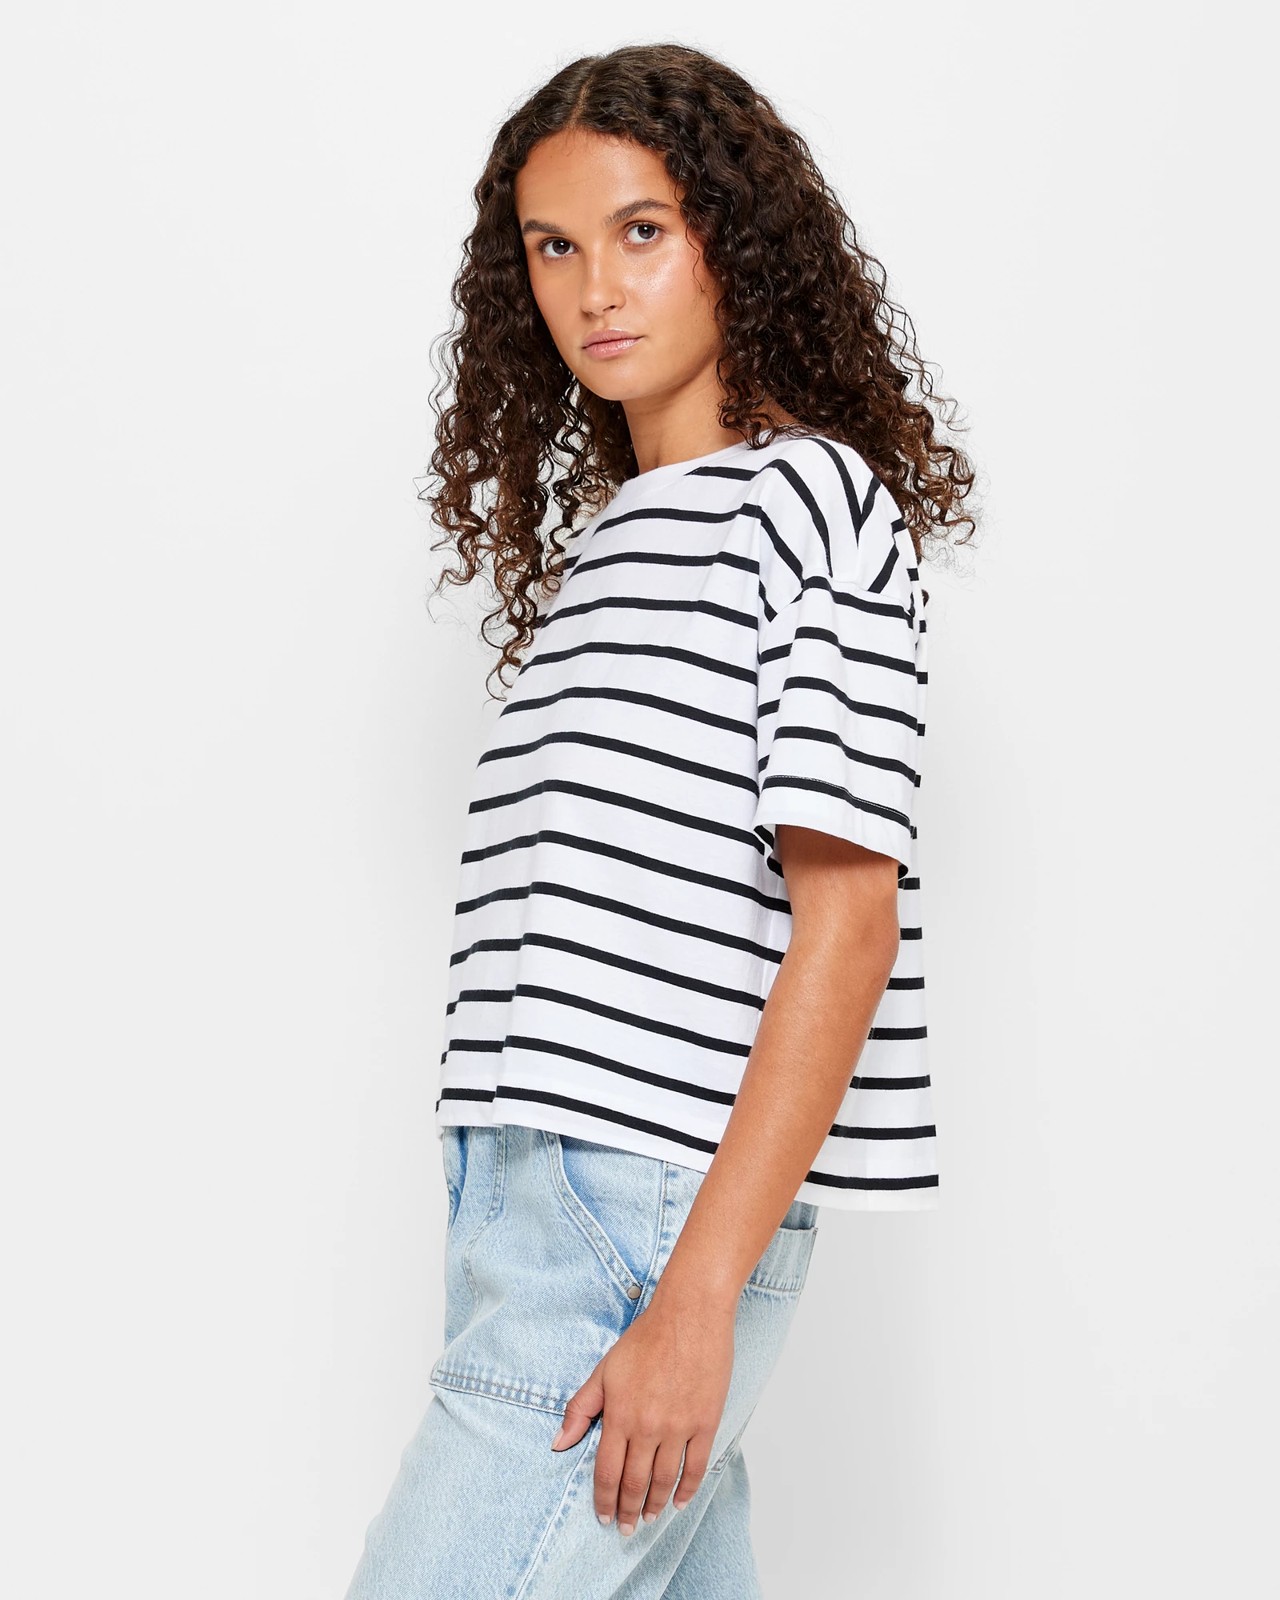 Black White Striped Shirt : Target